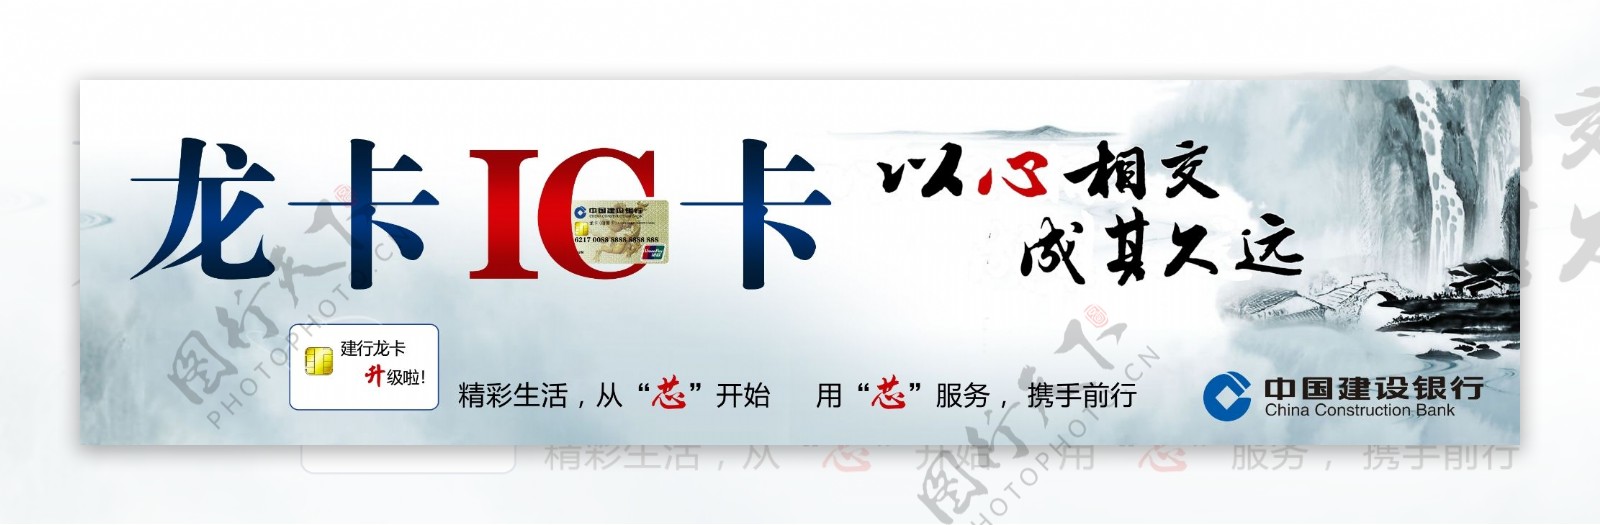 中国建设银行龙卡IC卡图片